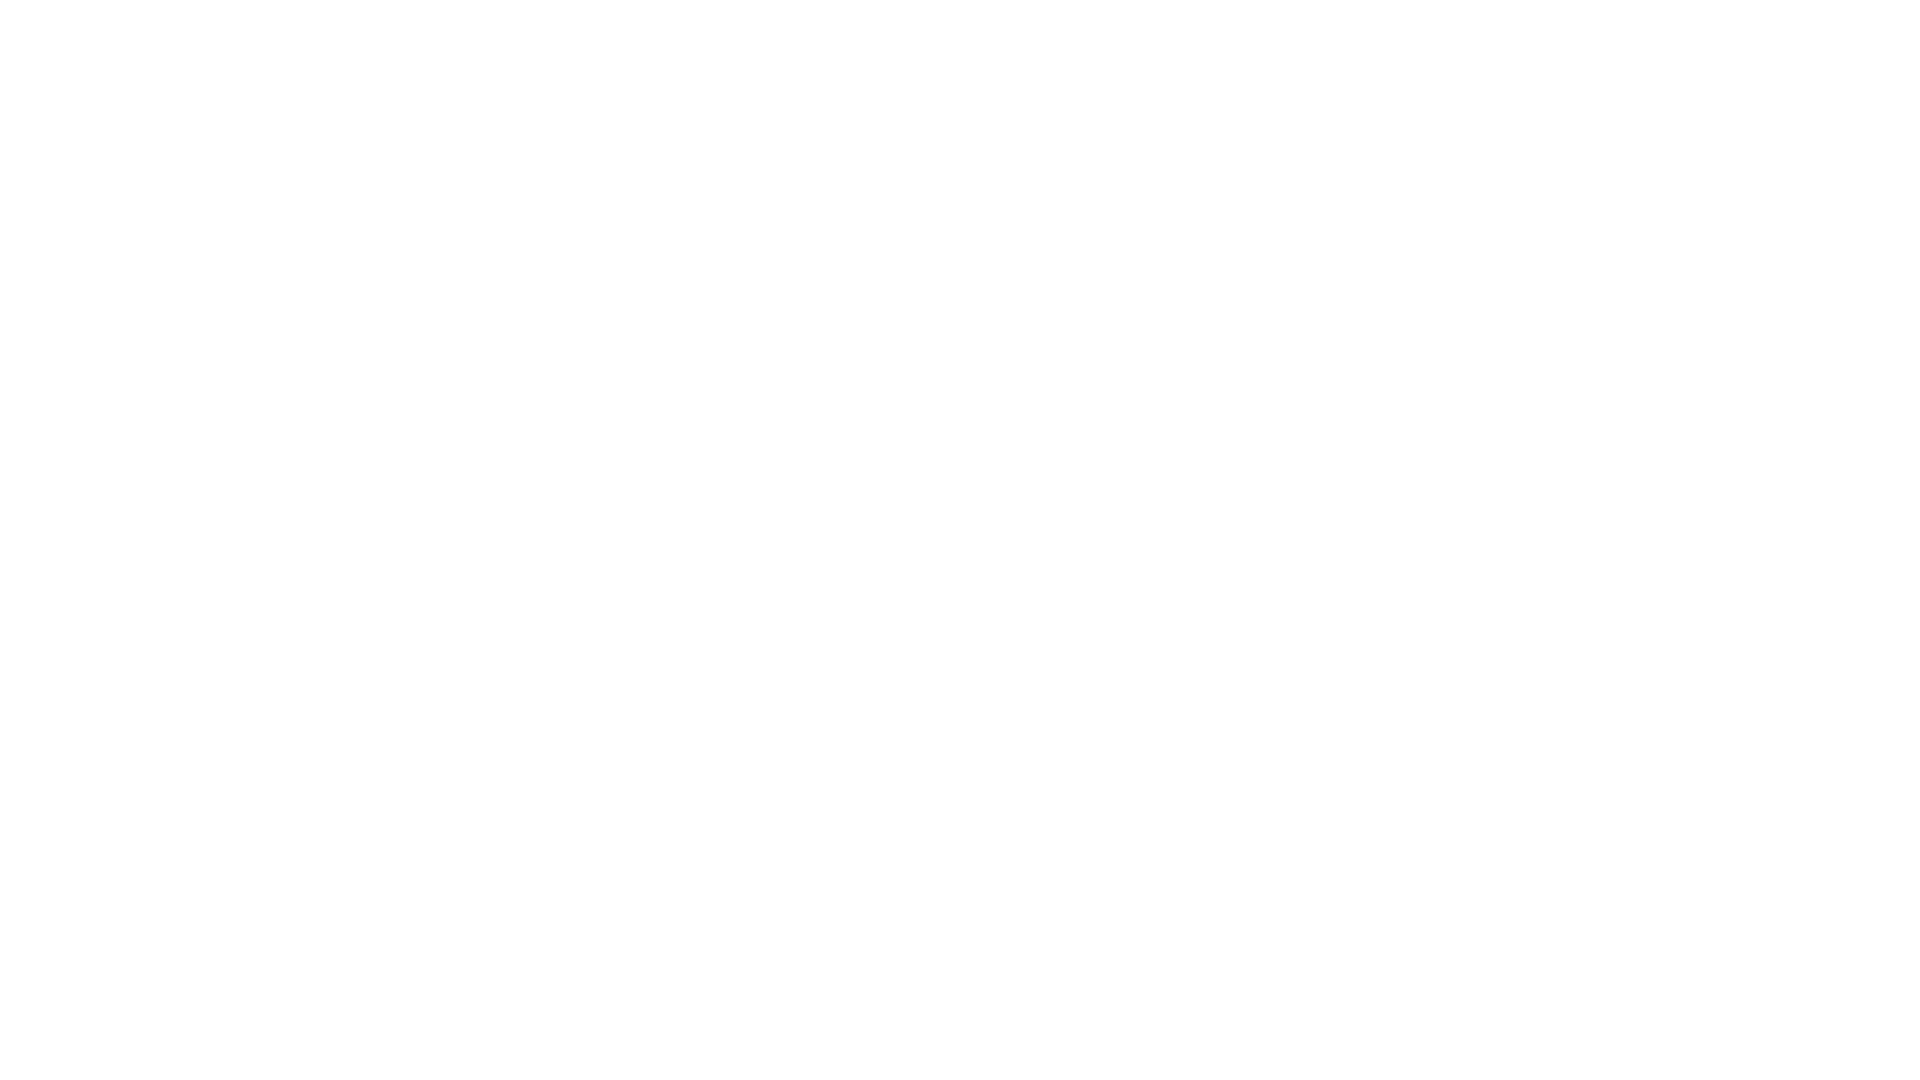 ForFarming